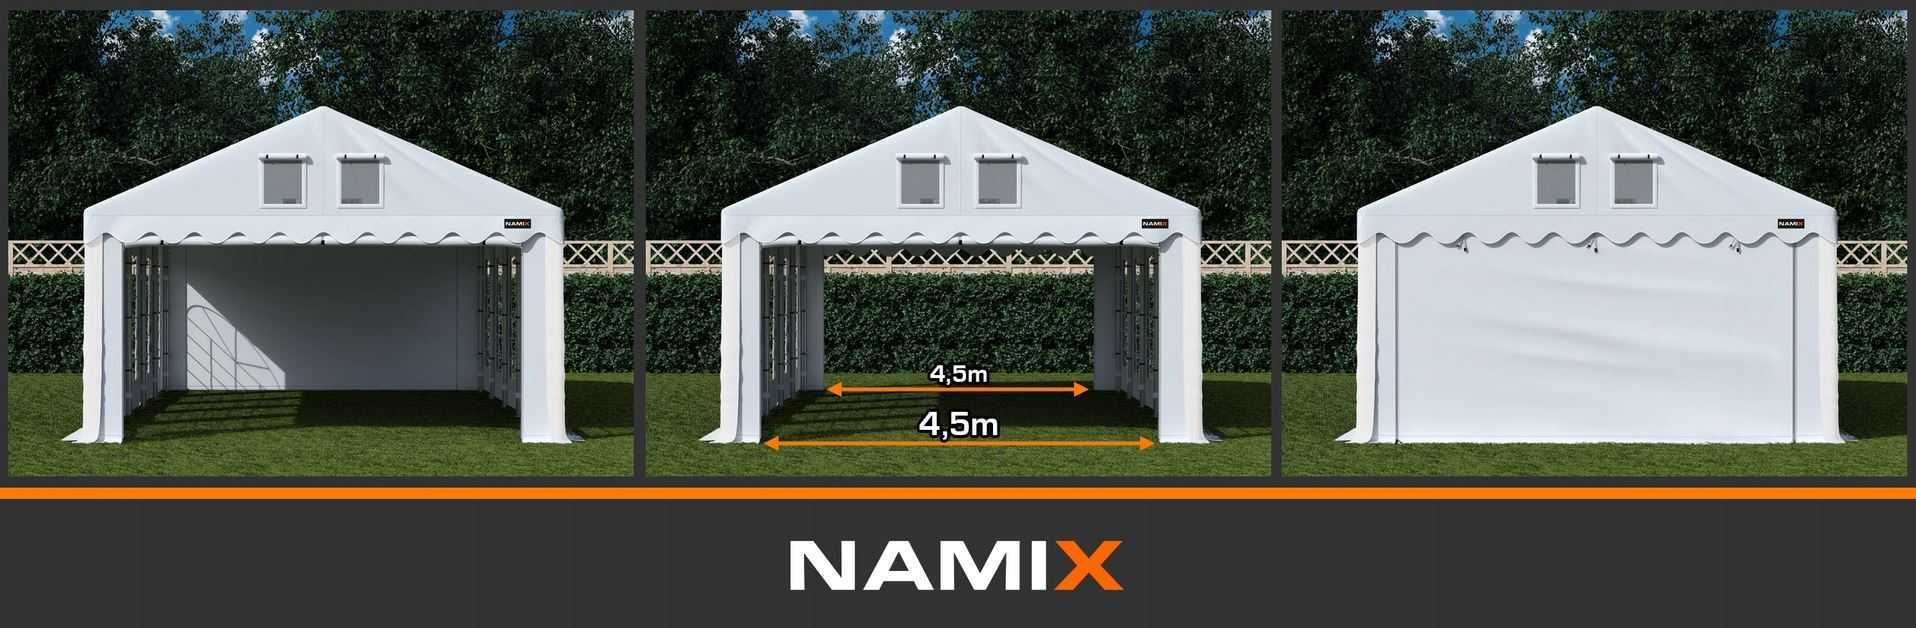 Namiot GRAND 5x8 ogrodowy imprezowy garaż wzmocniony PVC 560g/m2